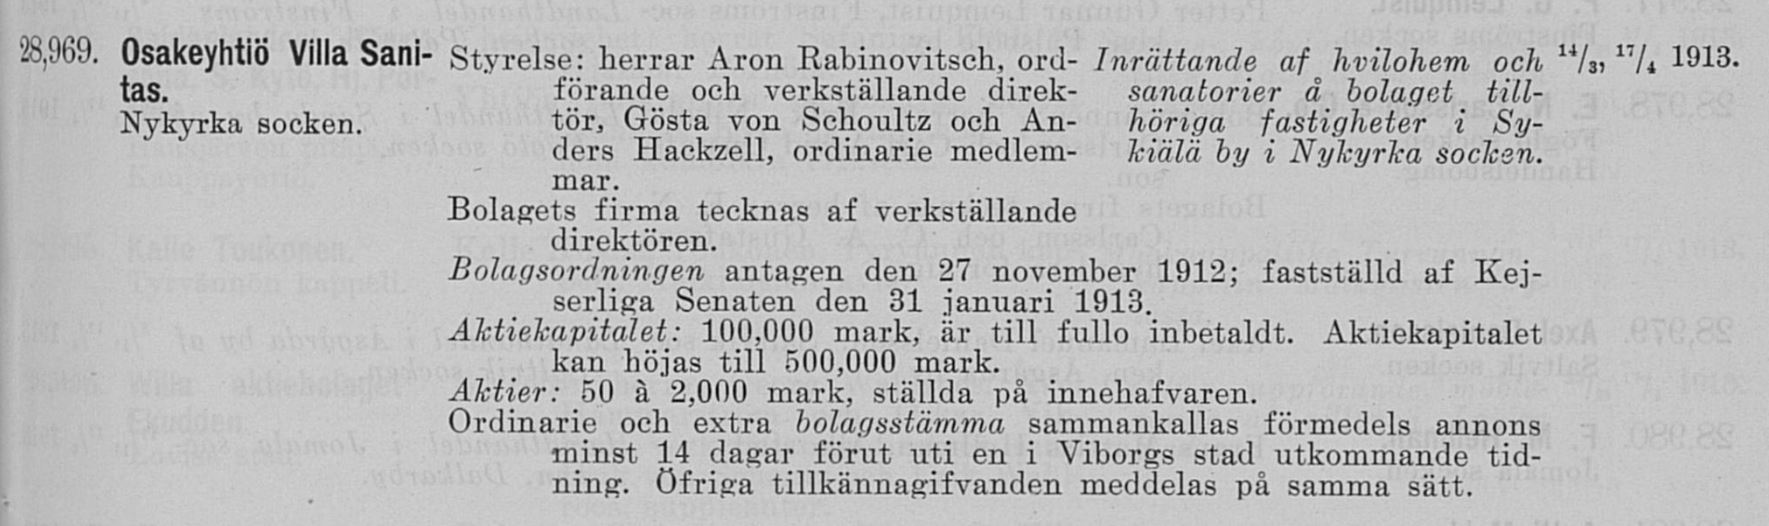 01.01.1913 Registeringstidning för varumärken no 512.JPG